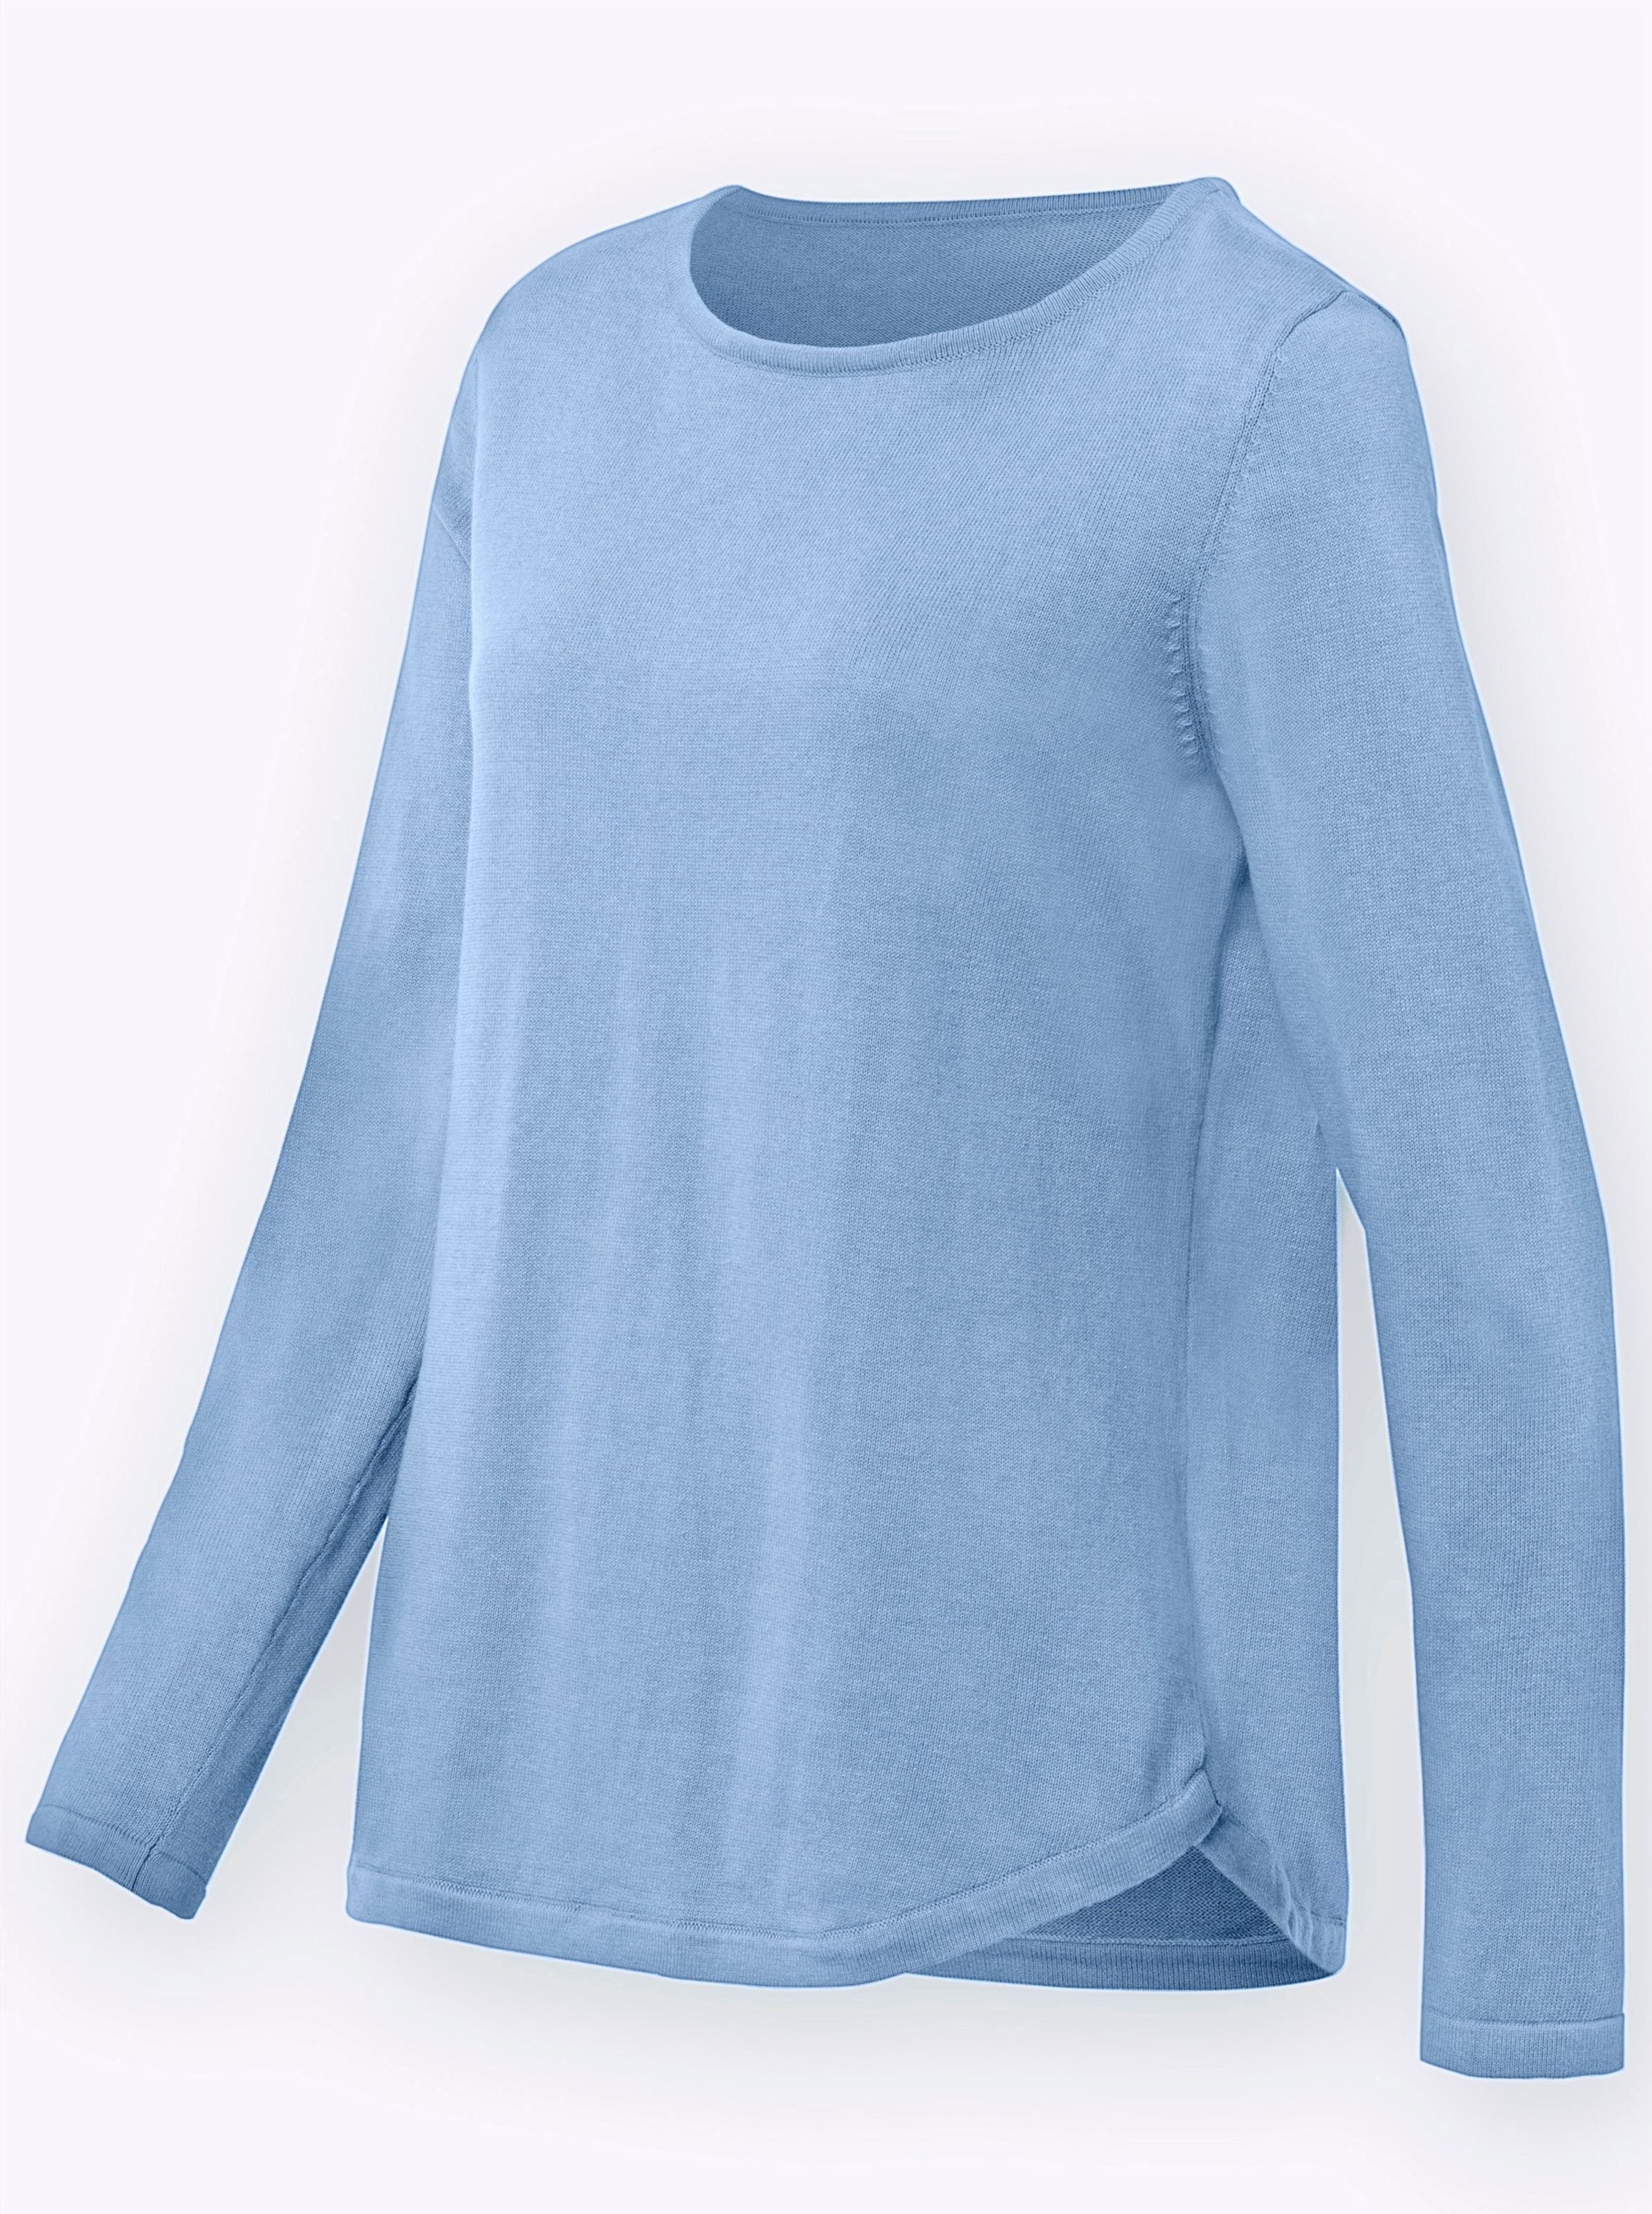 Witt Damen Baumwollpullover mit überlappendem Saum, eisblau